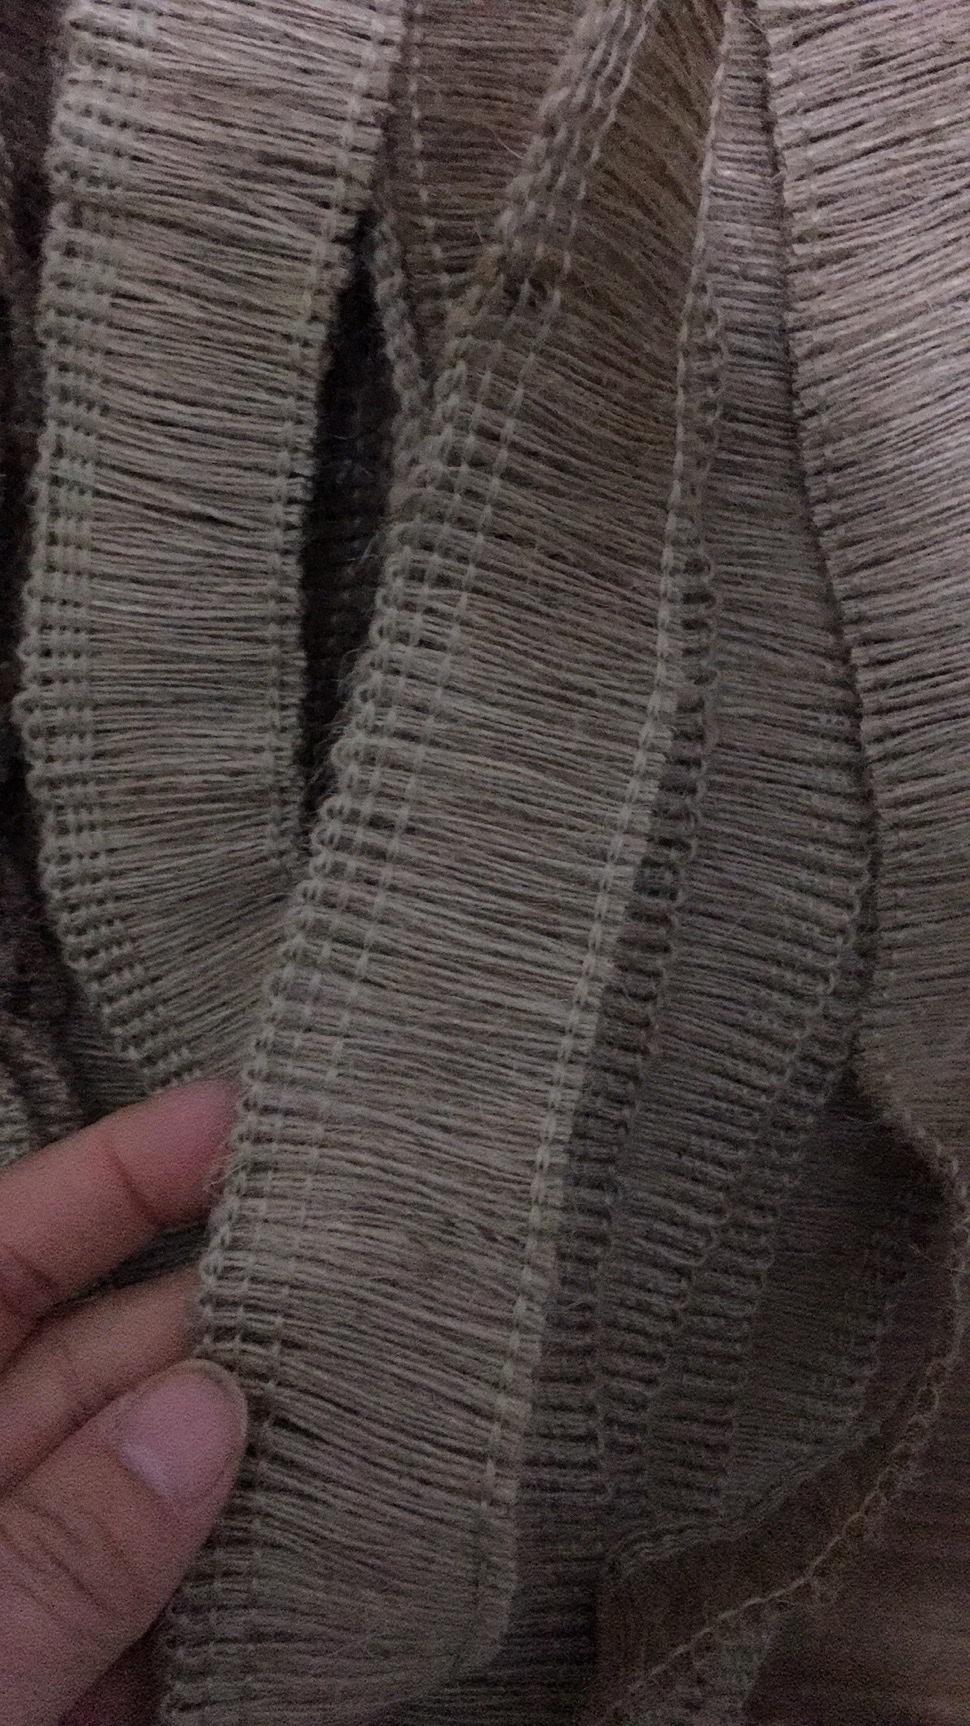 麻排须环保织带麻绳麻带4公分装饰材料工艺家纺材料产品图